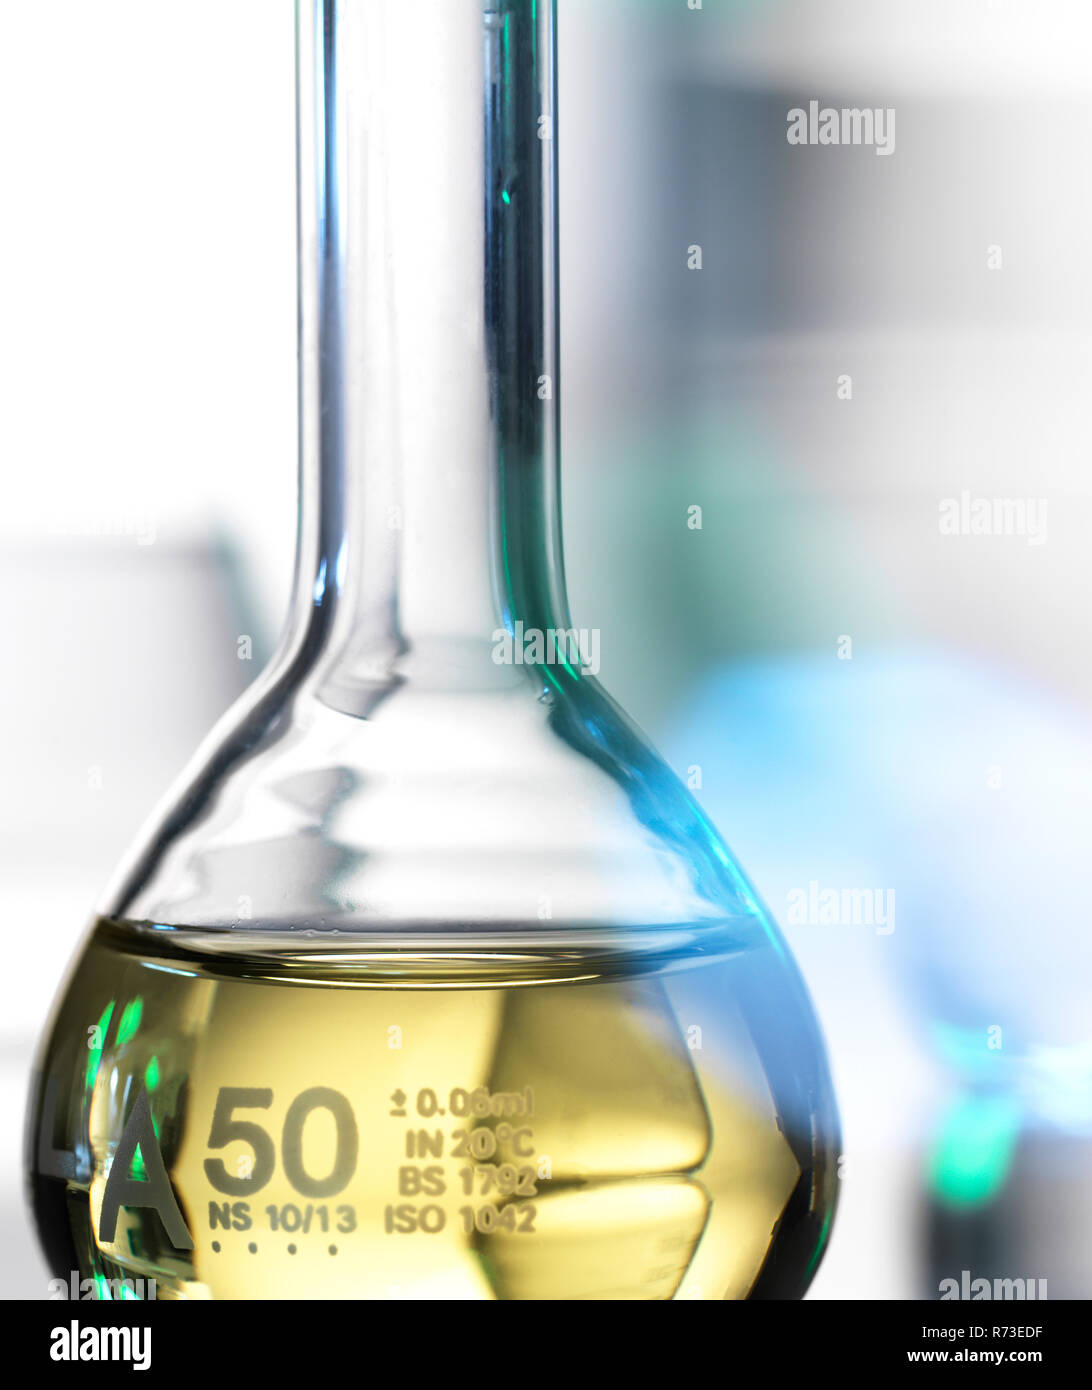 Laboratory beaker containing chemical formula Stock Photo